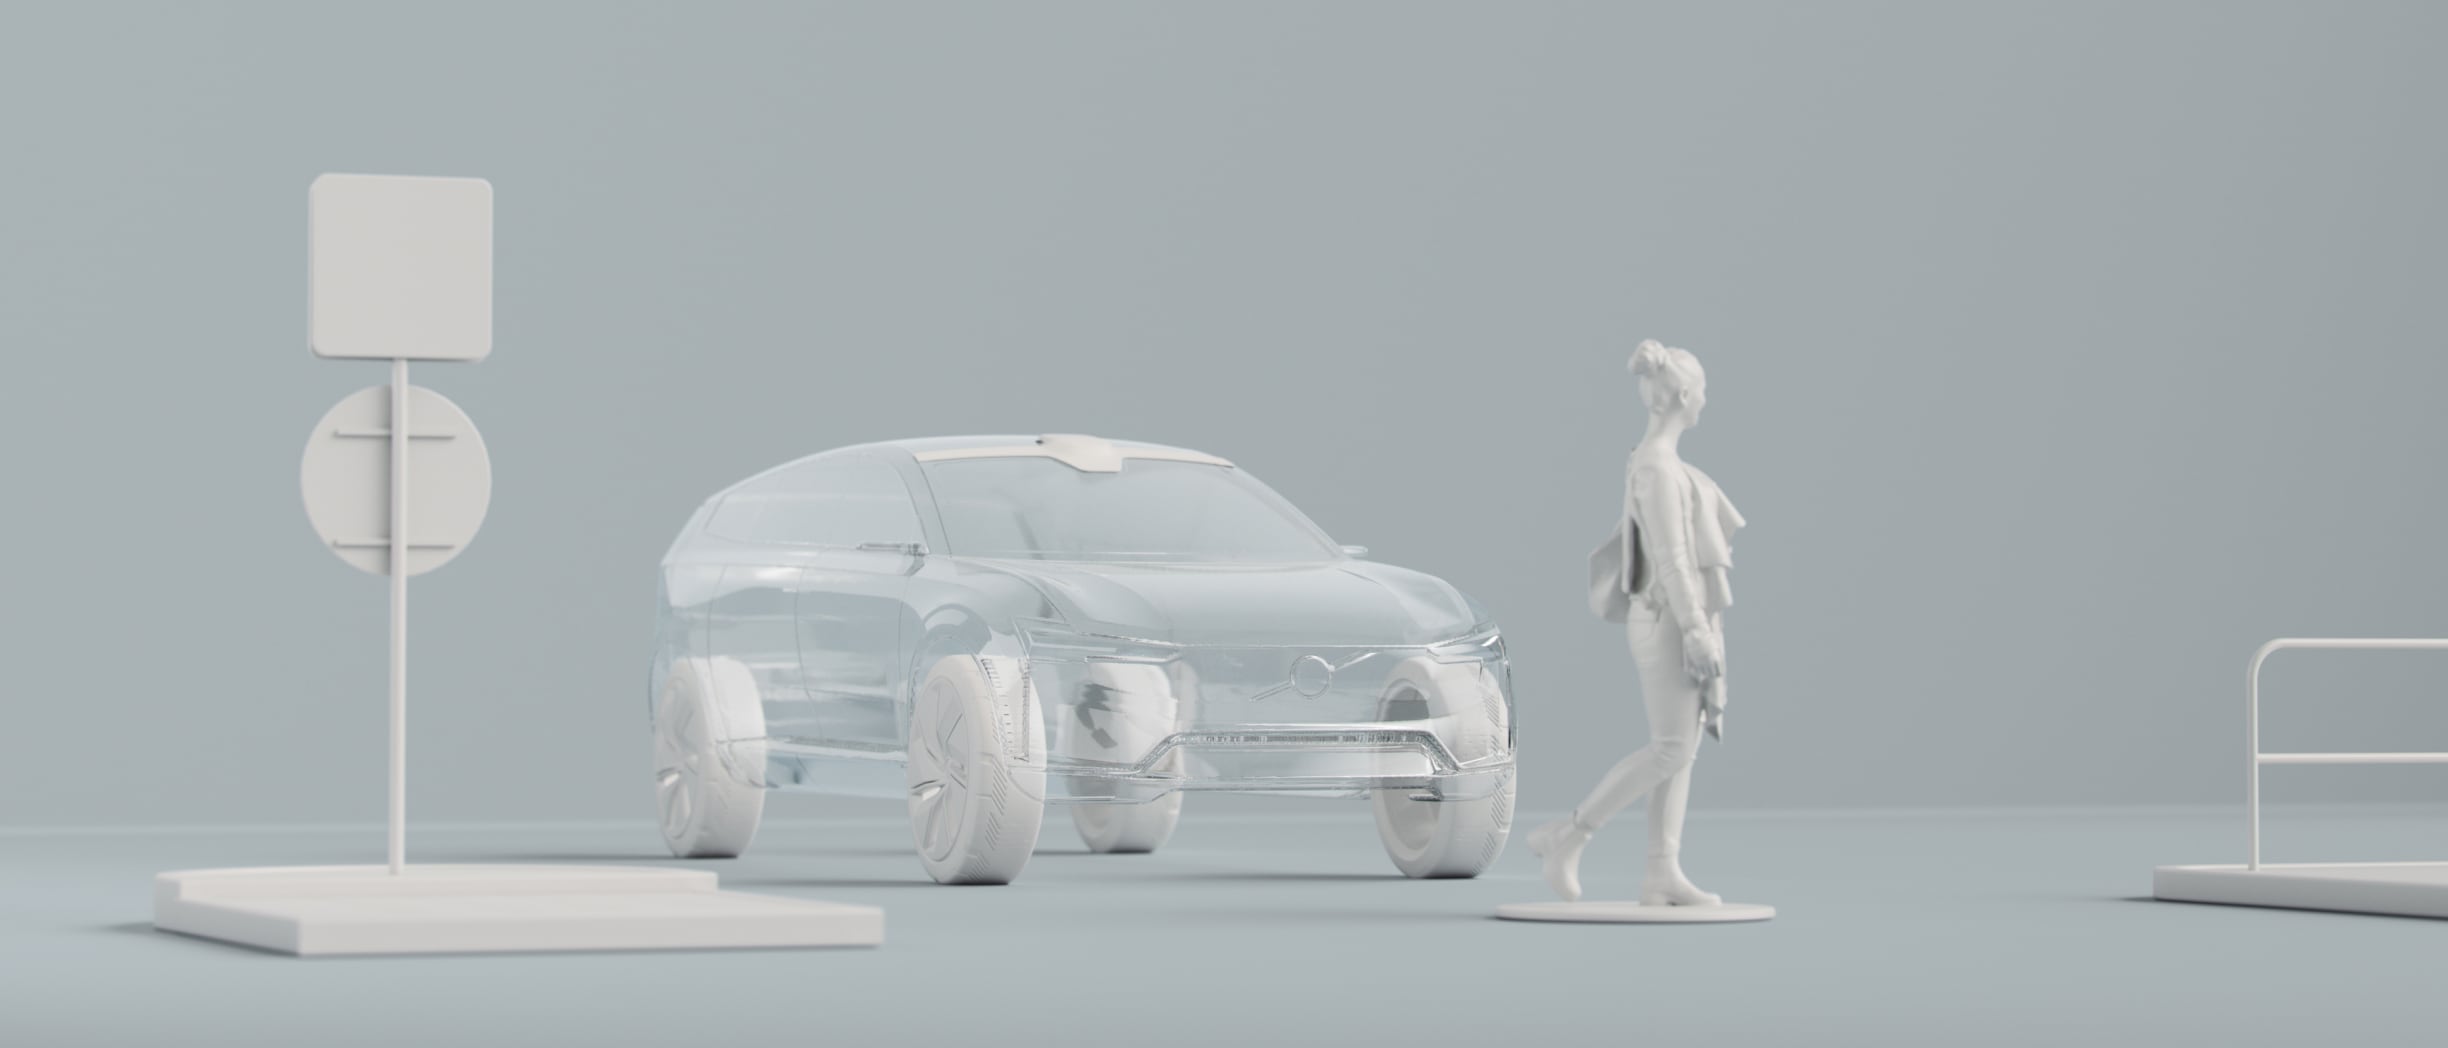 Un renderizado digital del contorno de un vehículo, una persona y otros objetos.